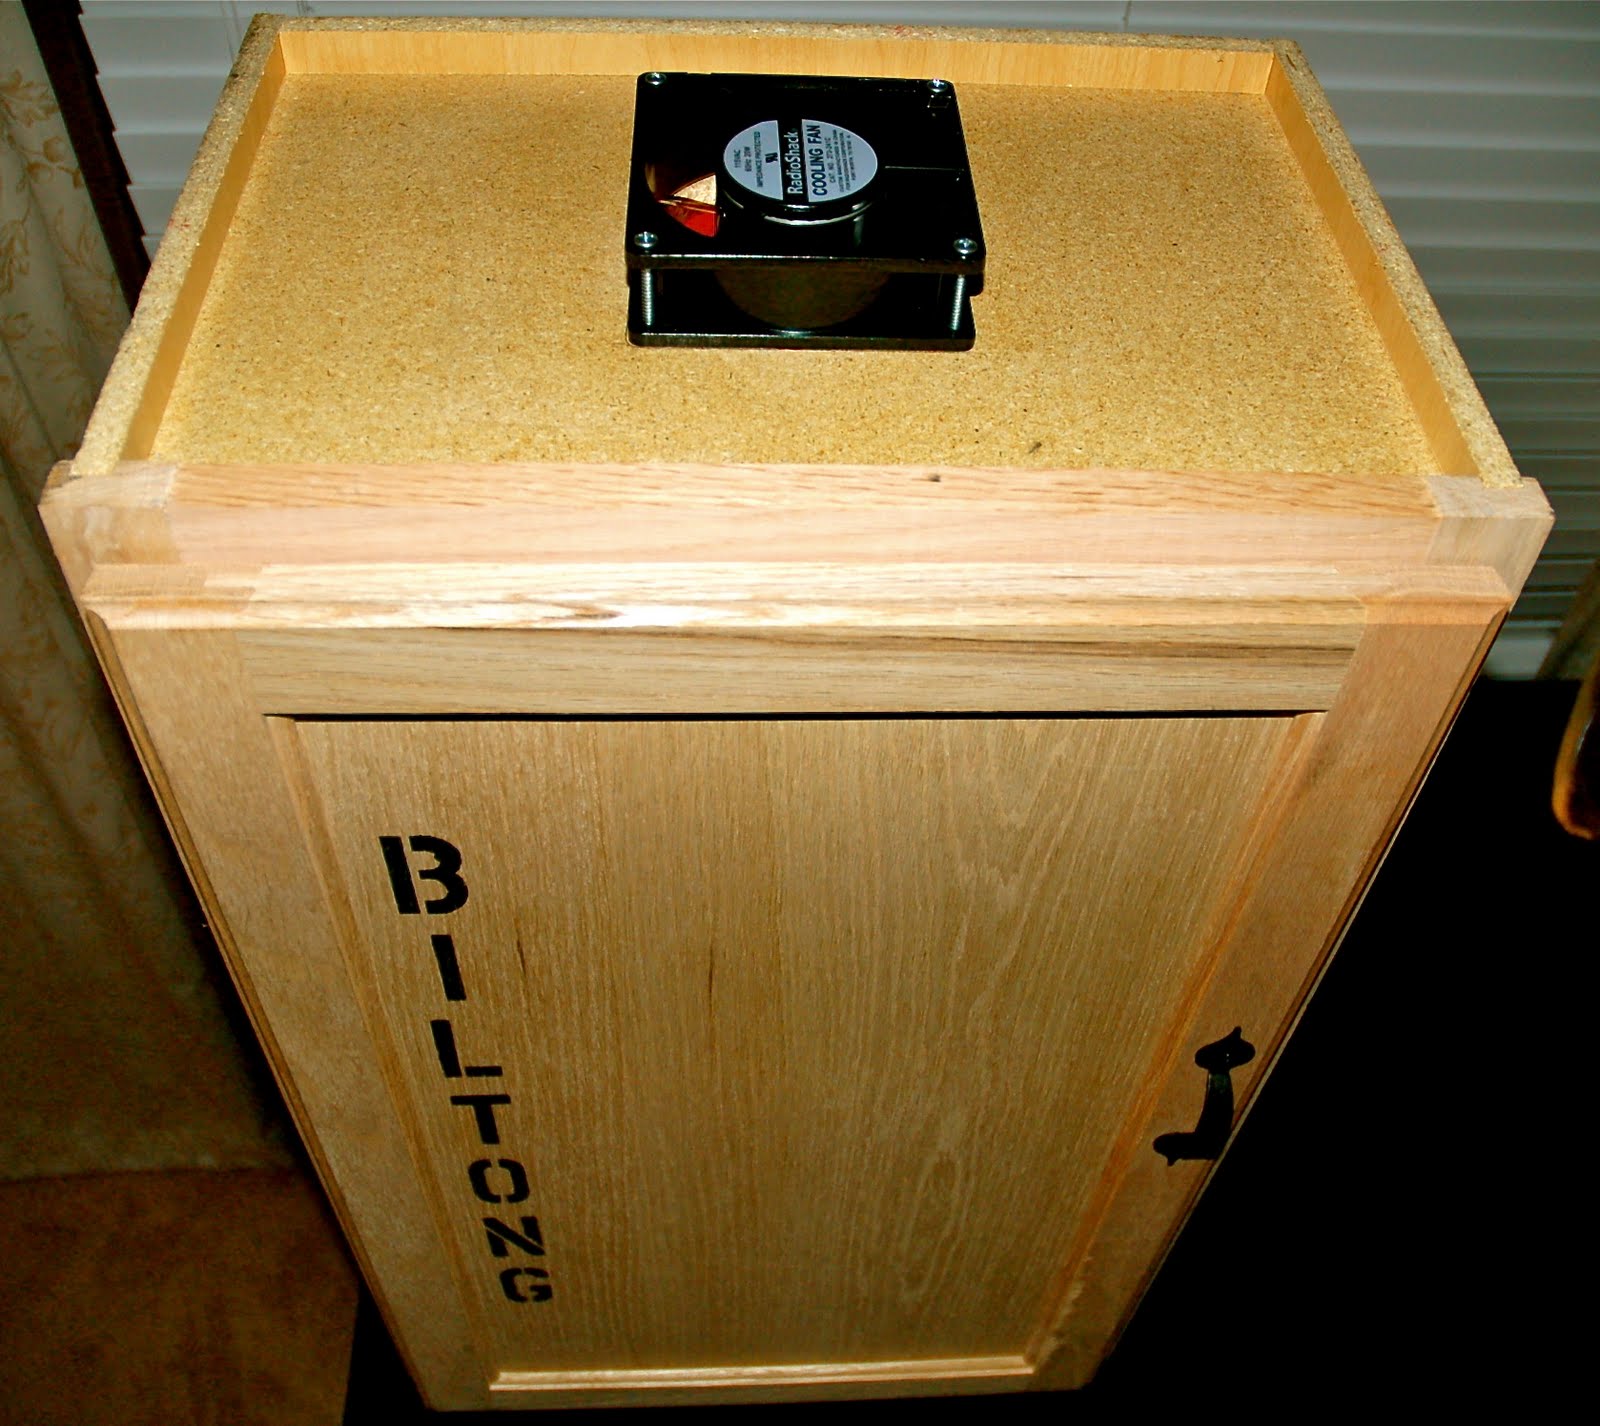 THE Biltong Box: My biltong box